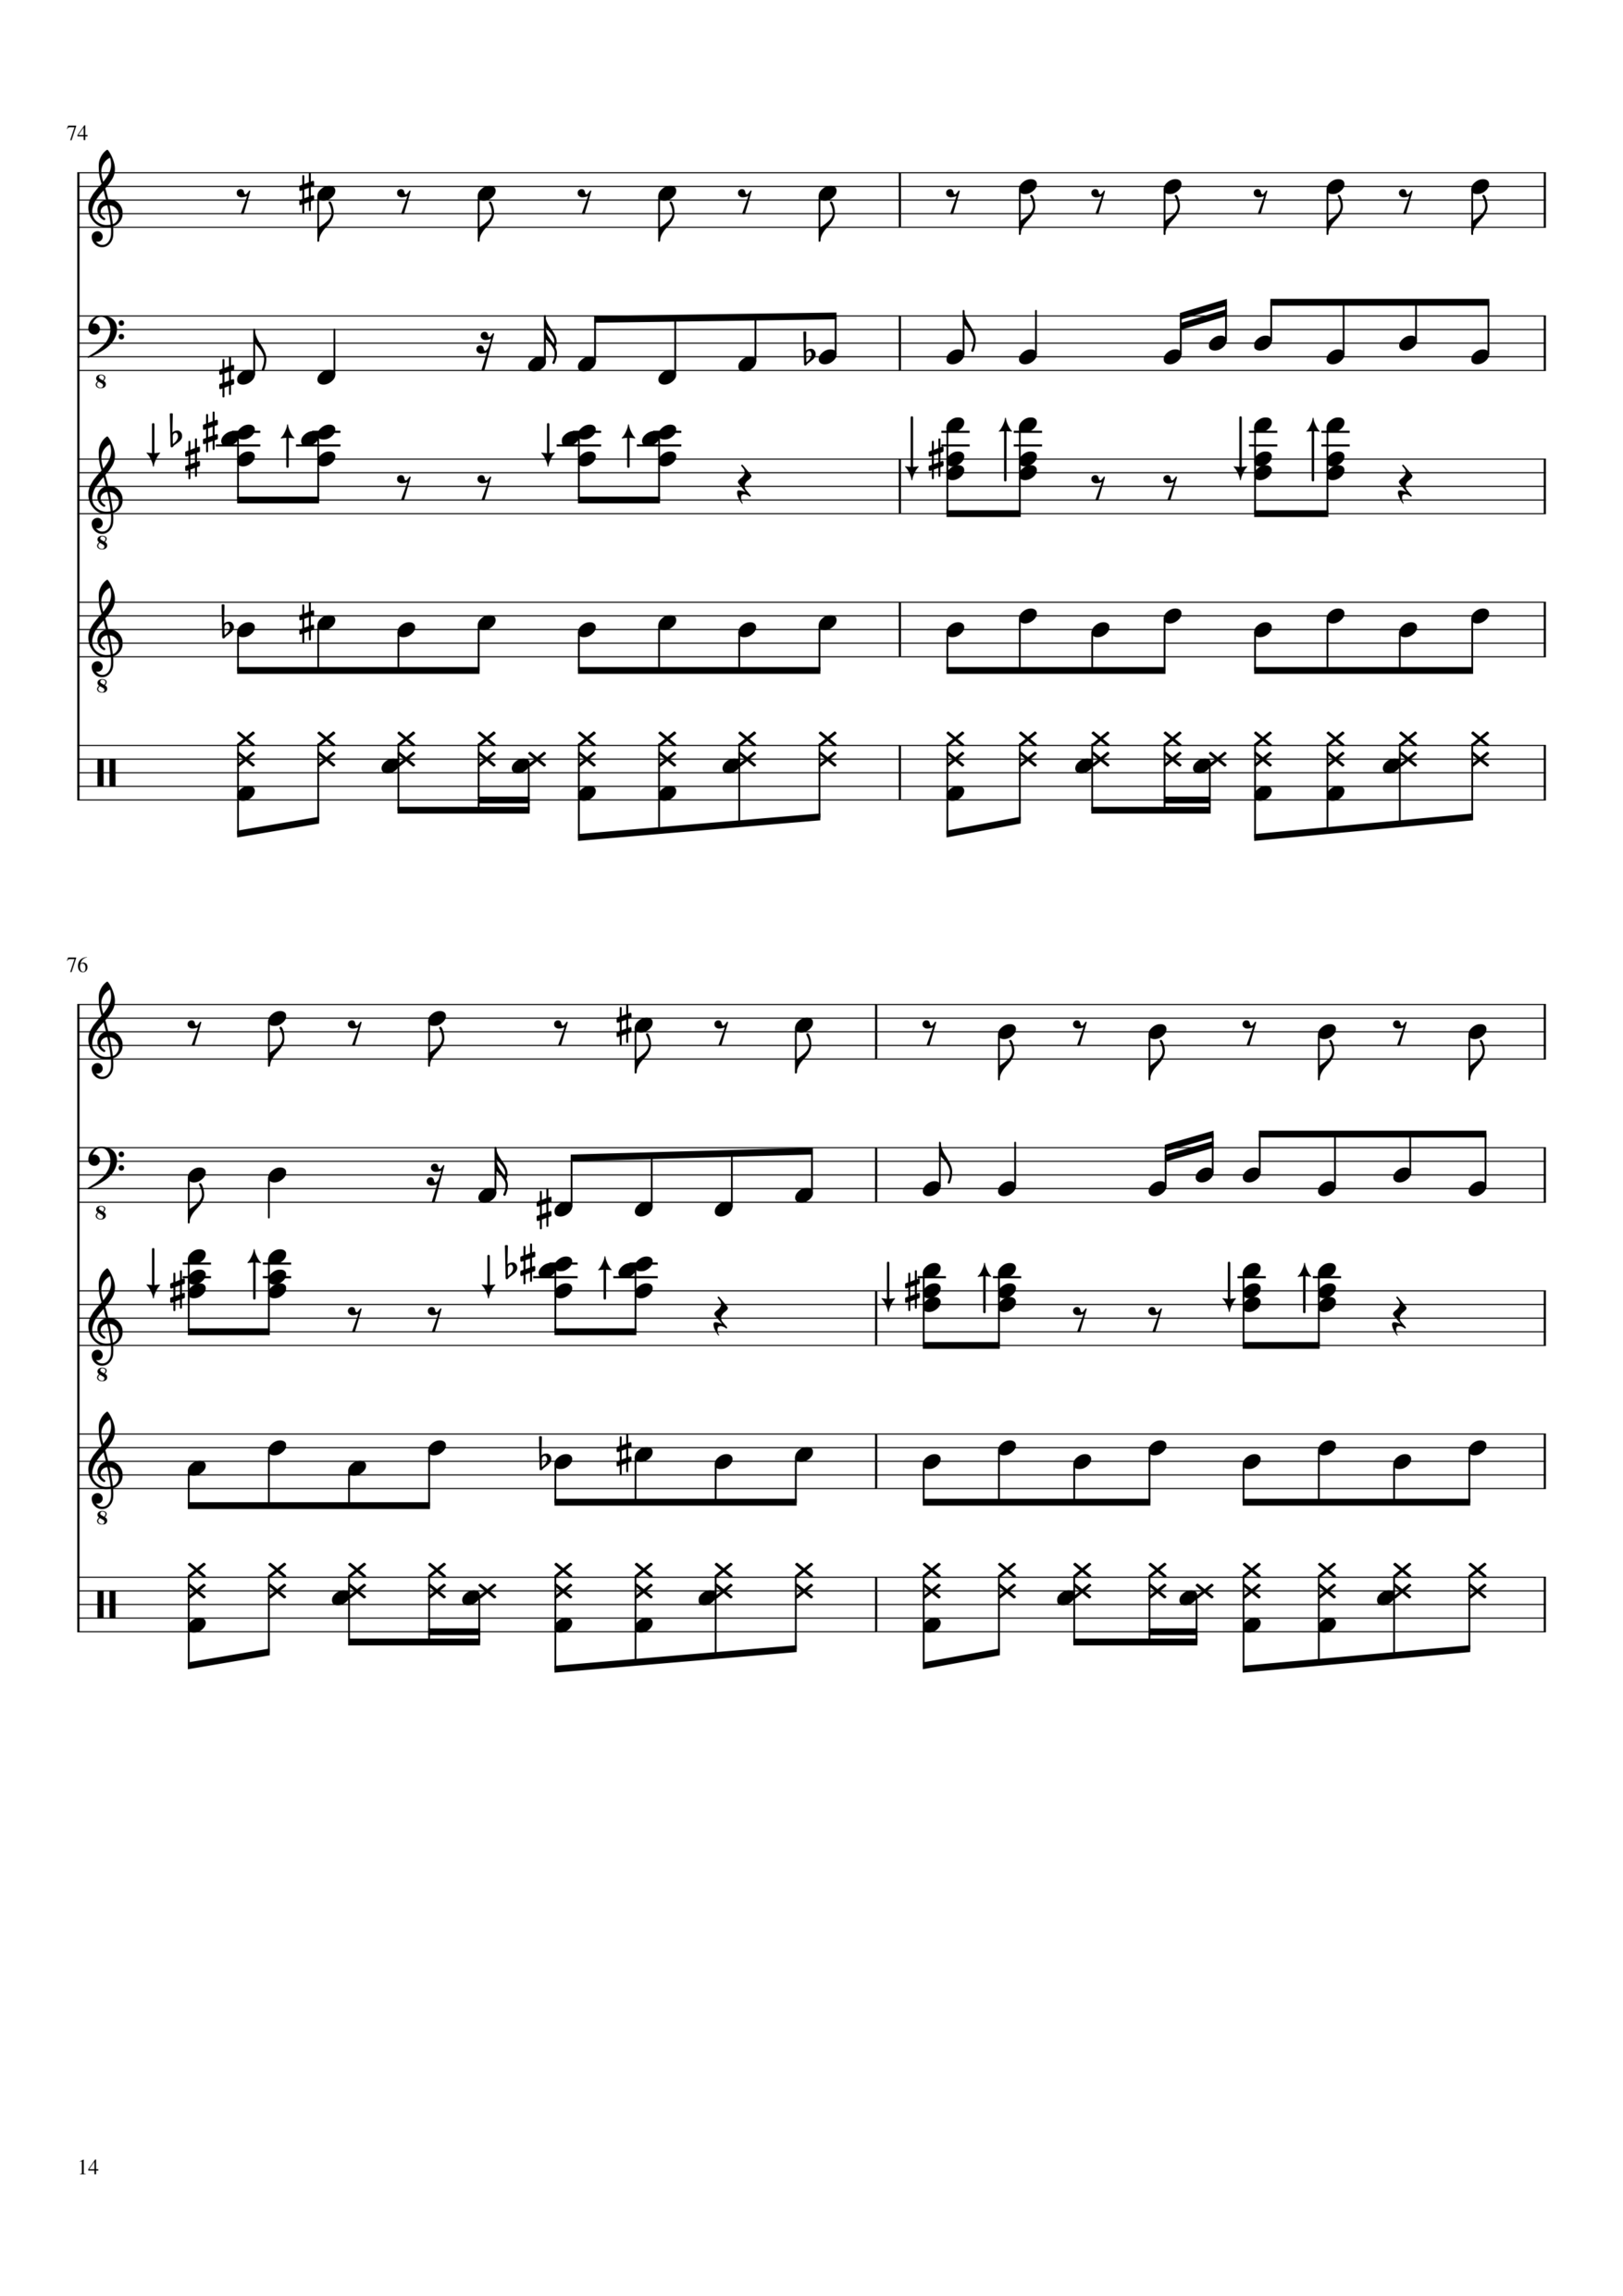 Vechnaya lyubov slide, Image 14